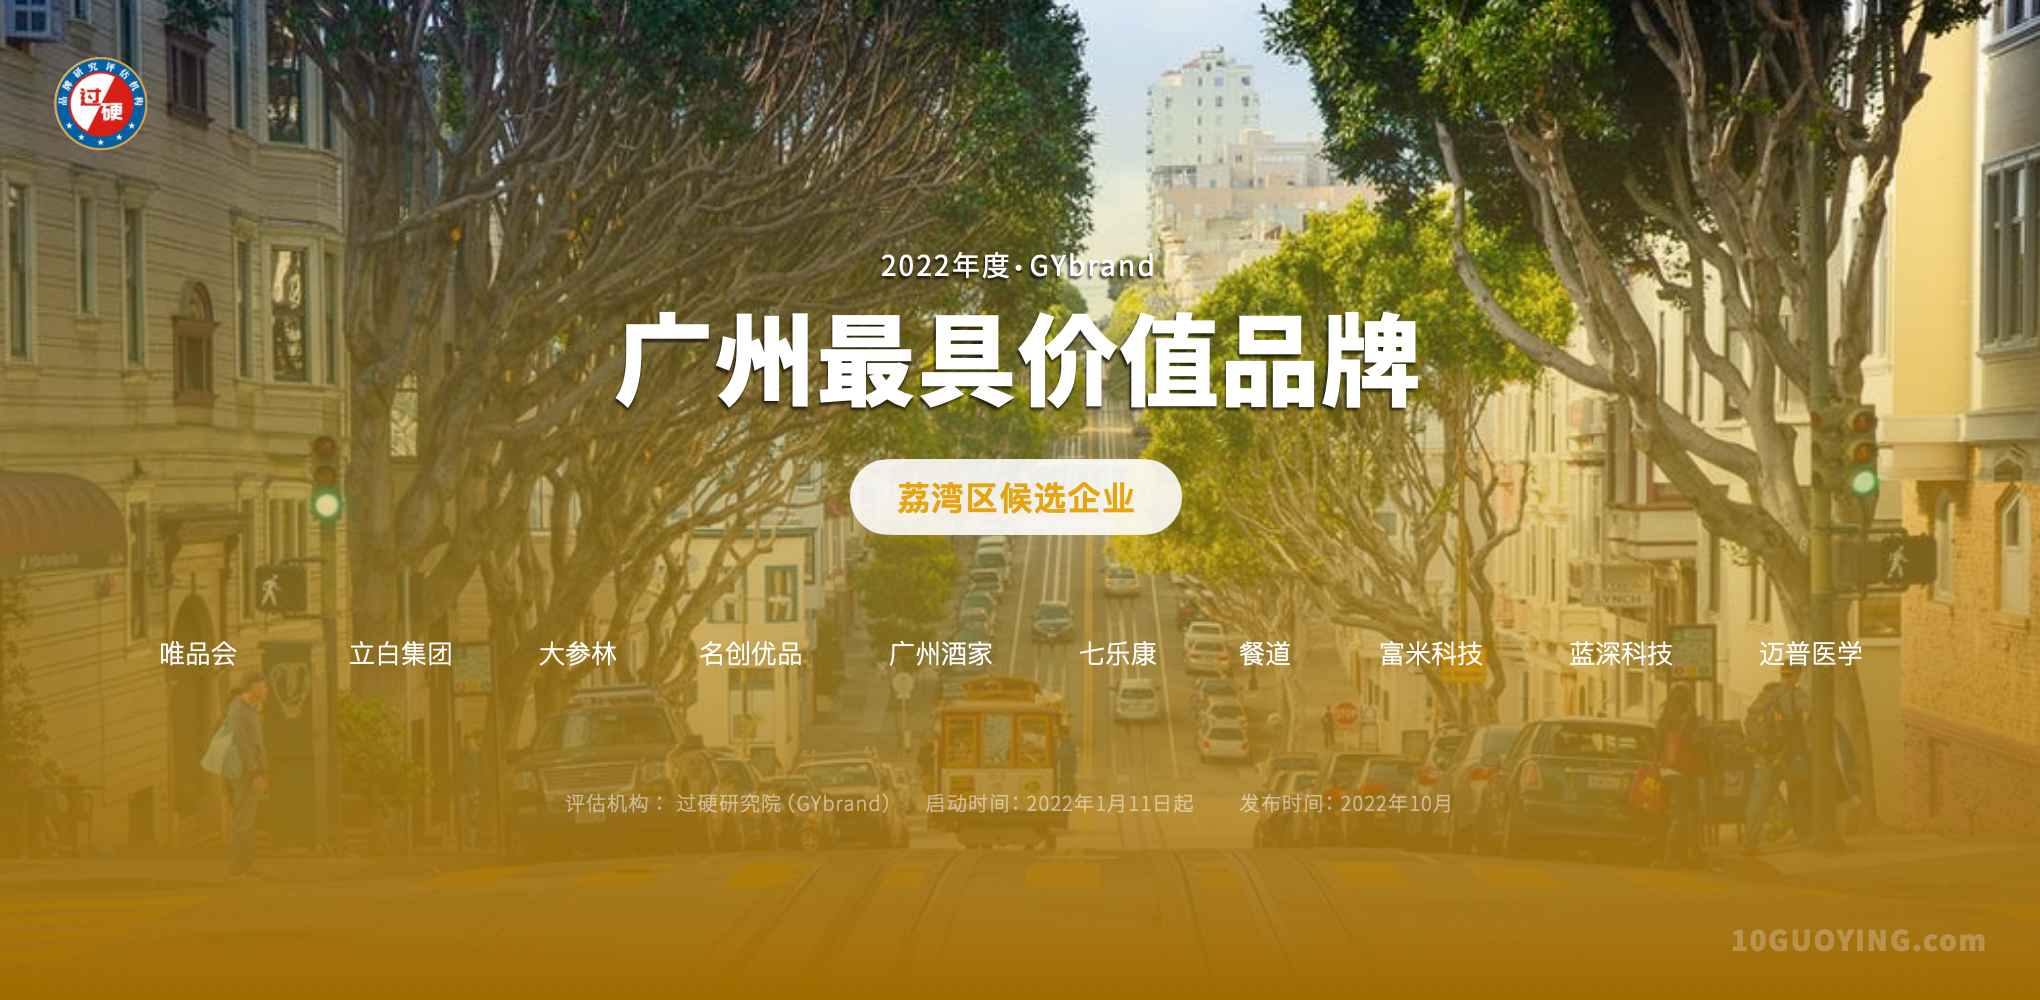 2022广州百强企业排名(荔湾候选名单)